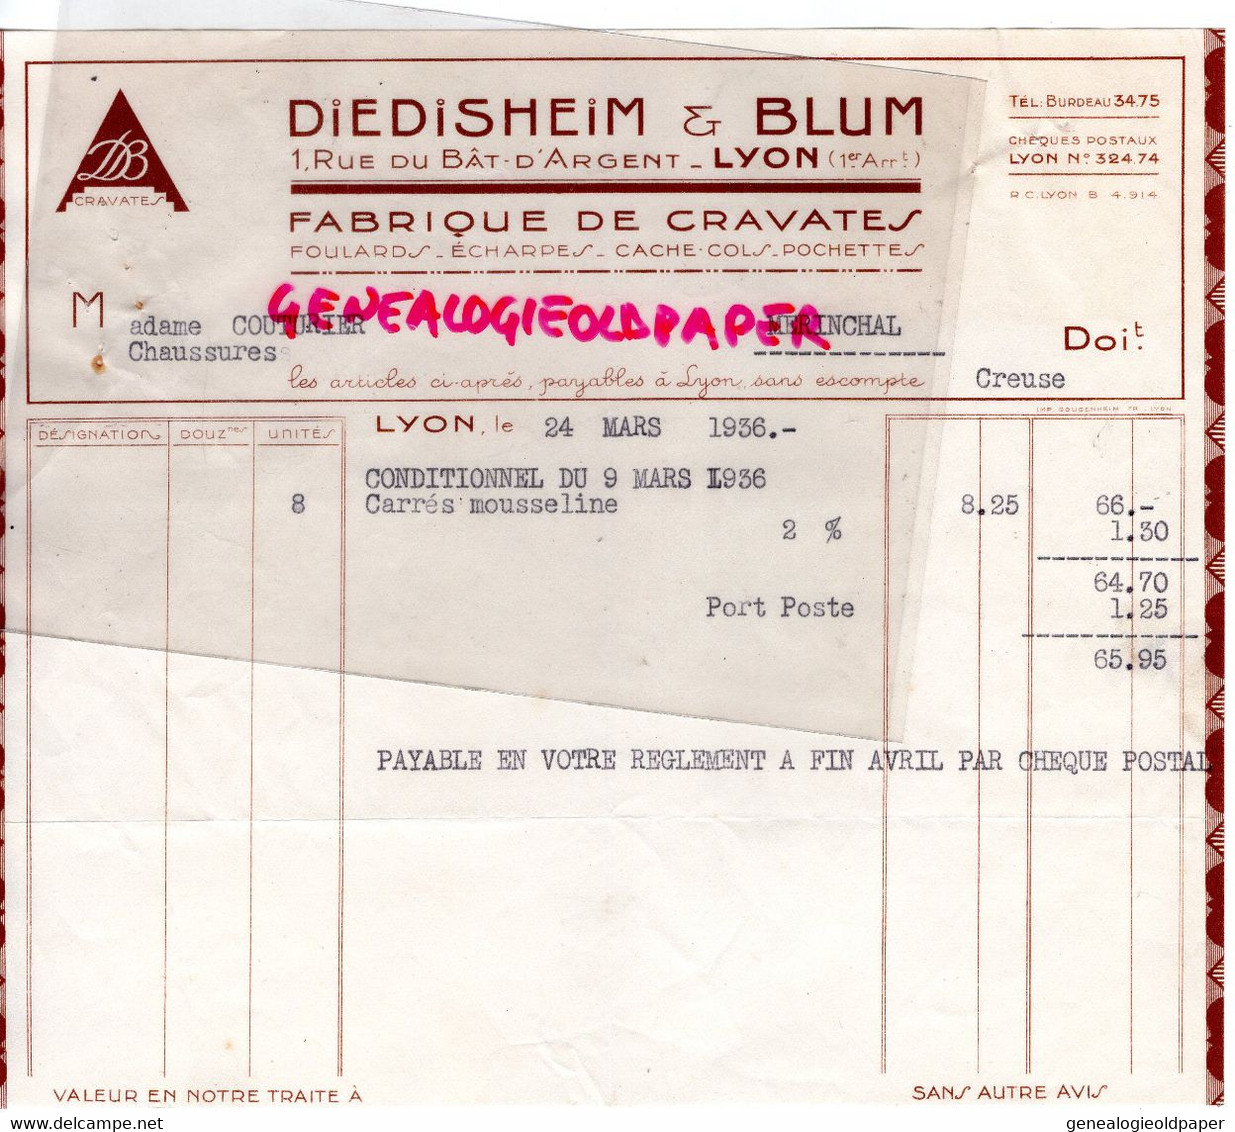 69- LYON- RARE FACTURE DIEDISHEIM & BLUM- FABRIQUE CRAVATES FOULARDS- MME COUTURIER MERINCHAL- 1936 - Textile & Clothing